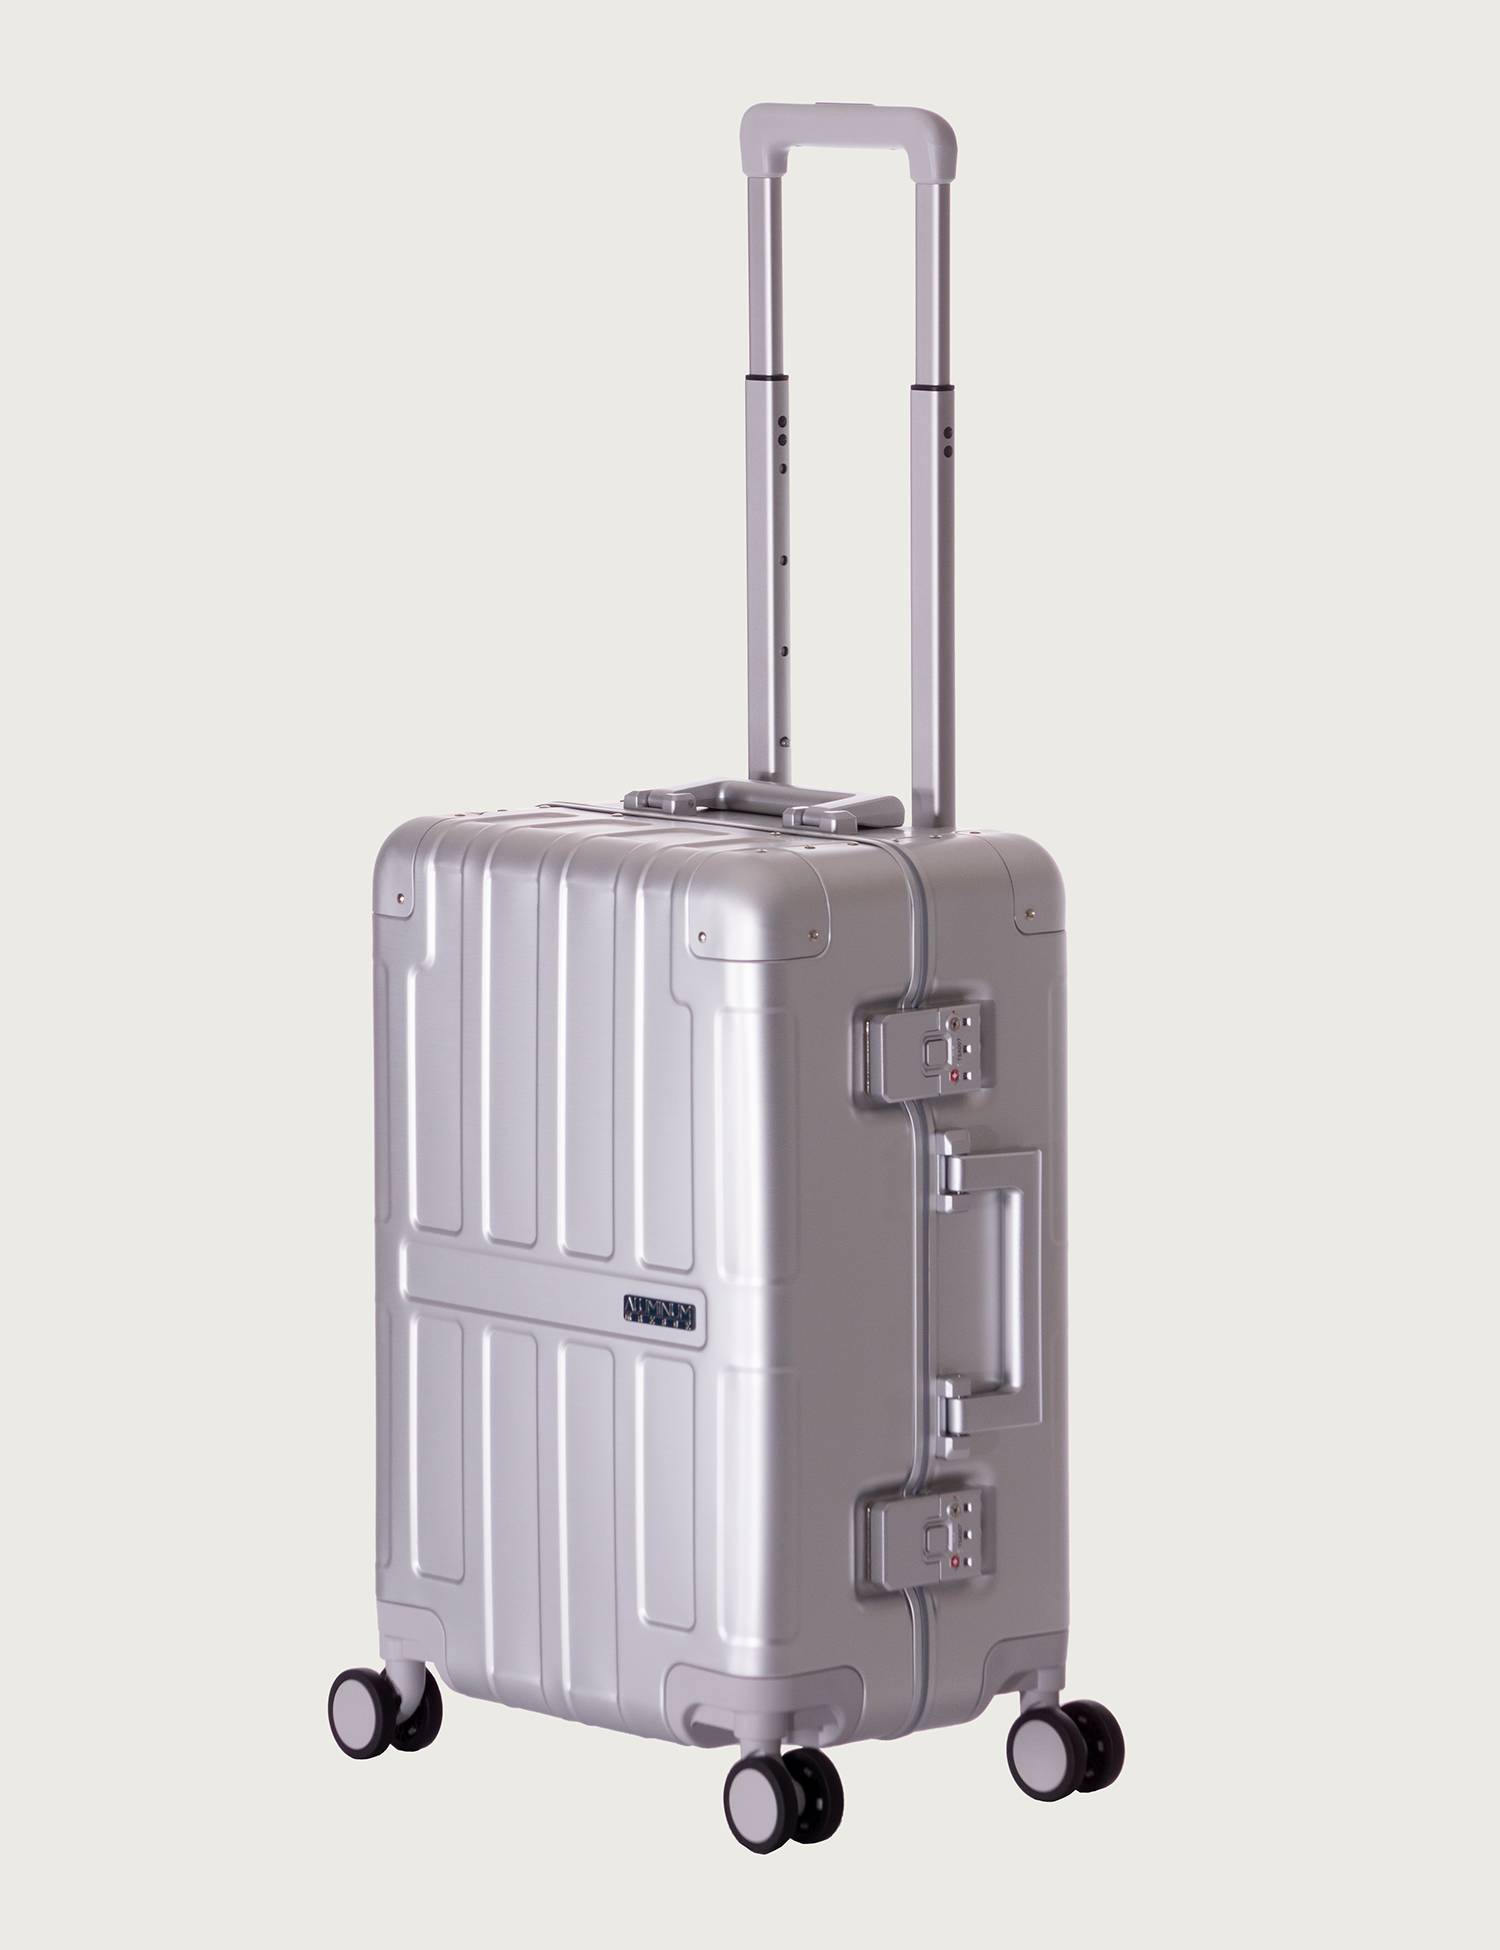 アジア・ラゲージのスーツケース MAXBOX マックスボックス | アジア